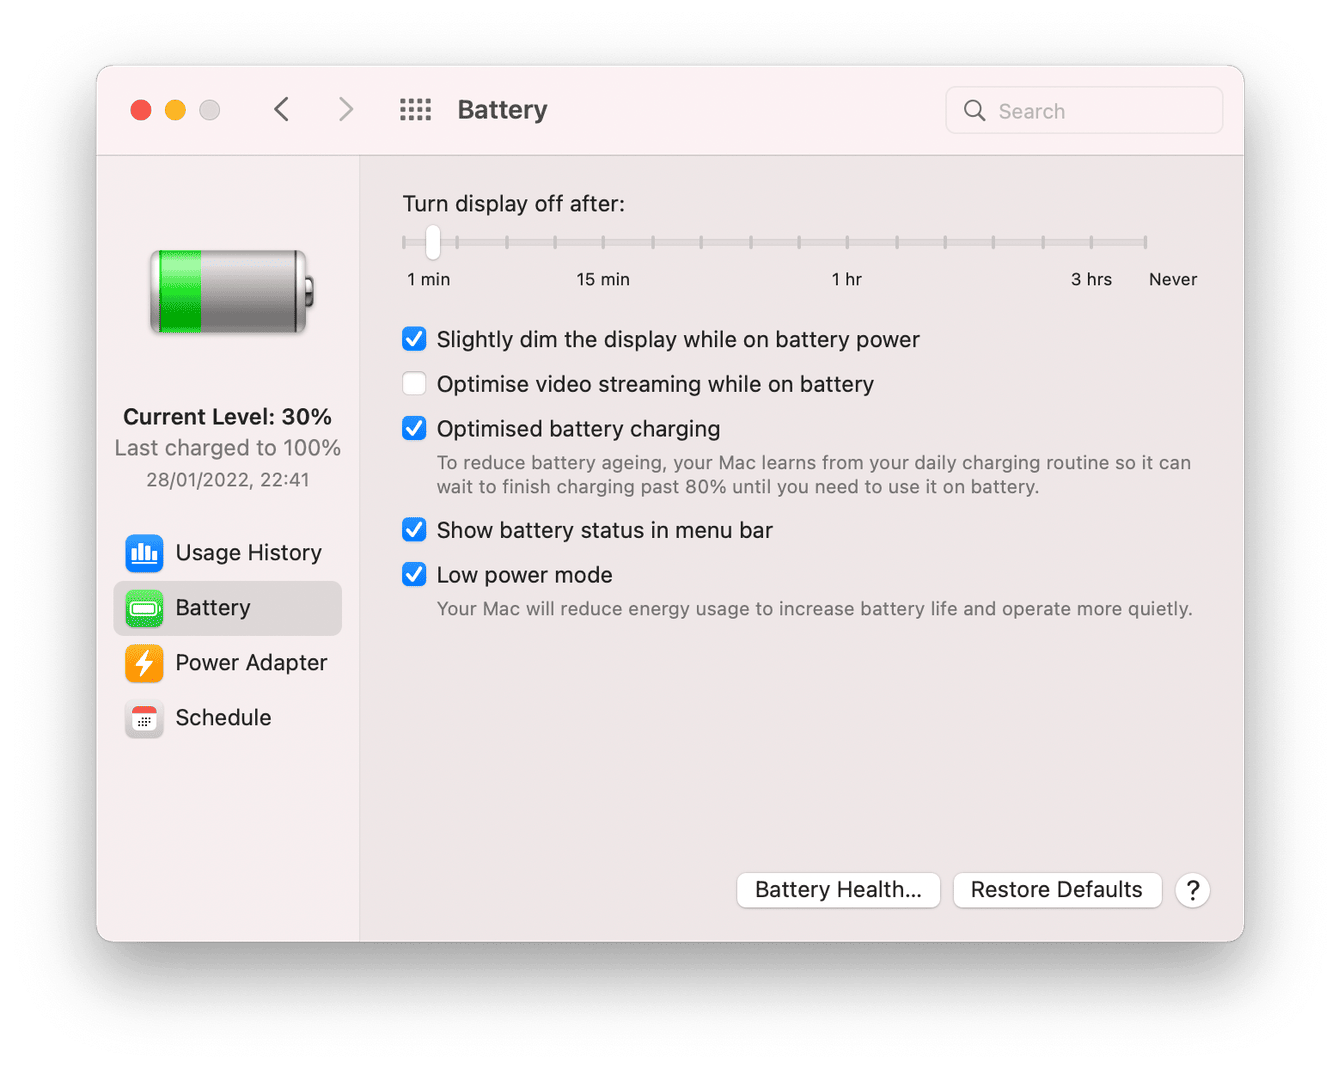 Battery optimization settings